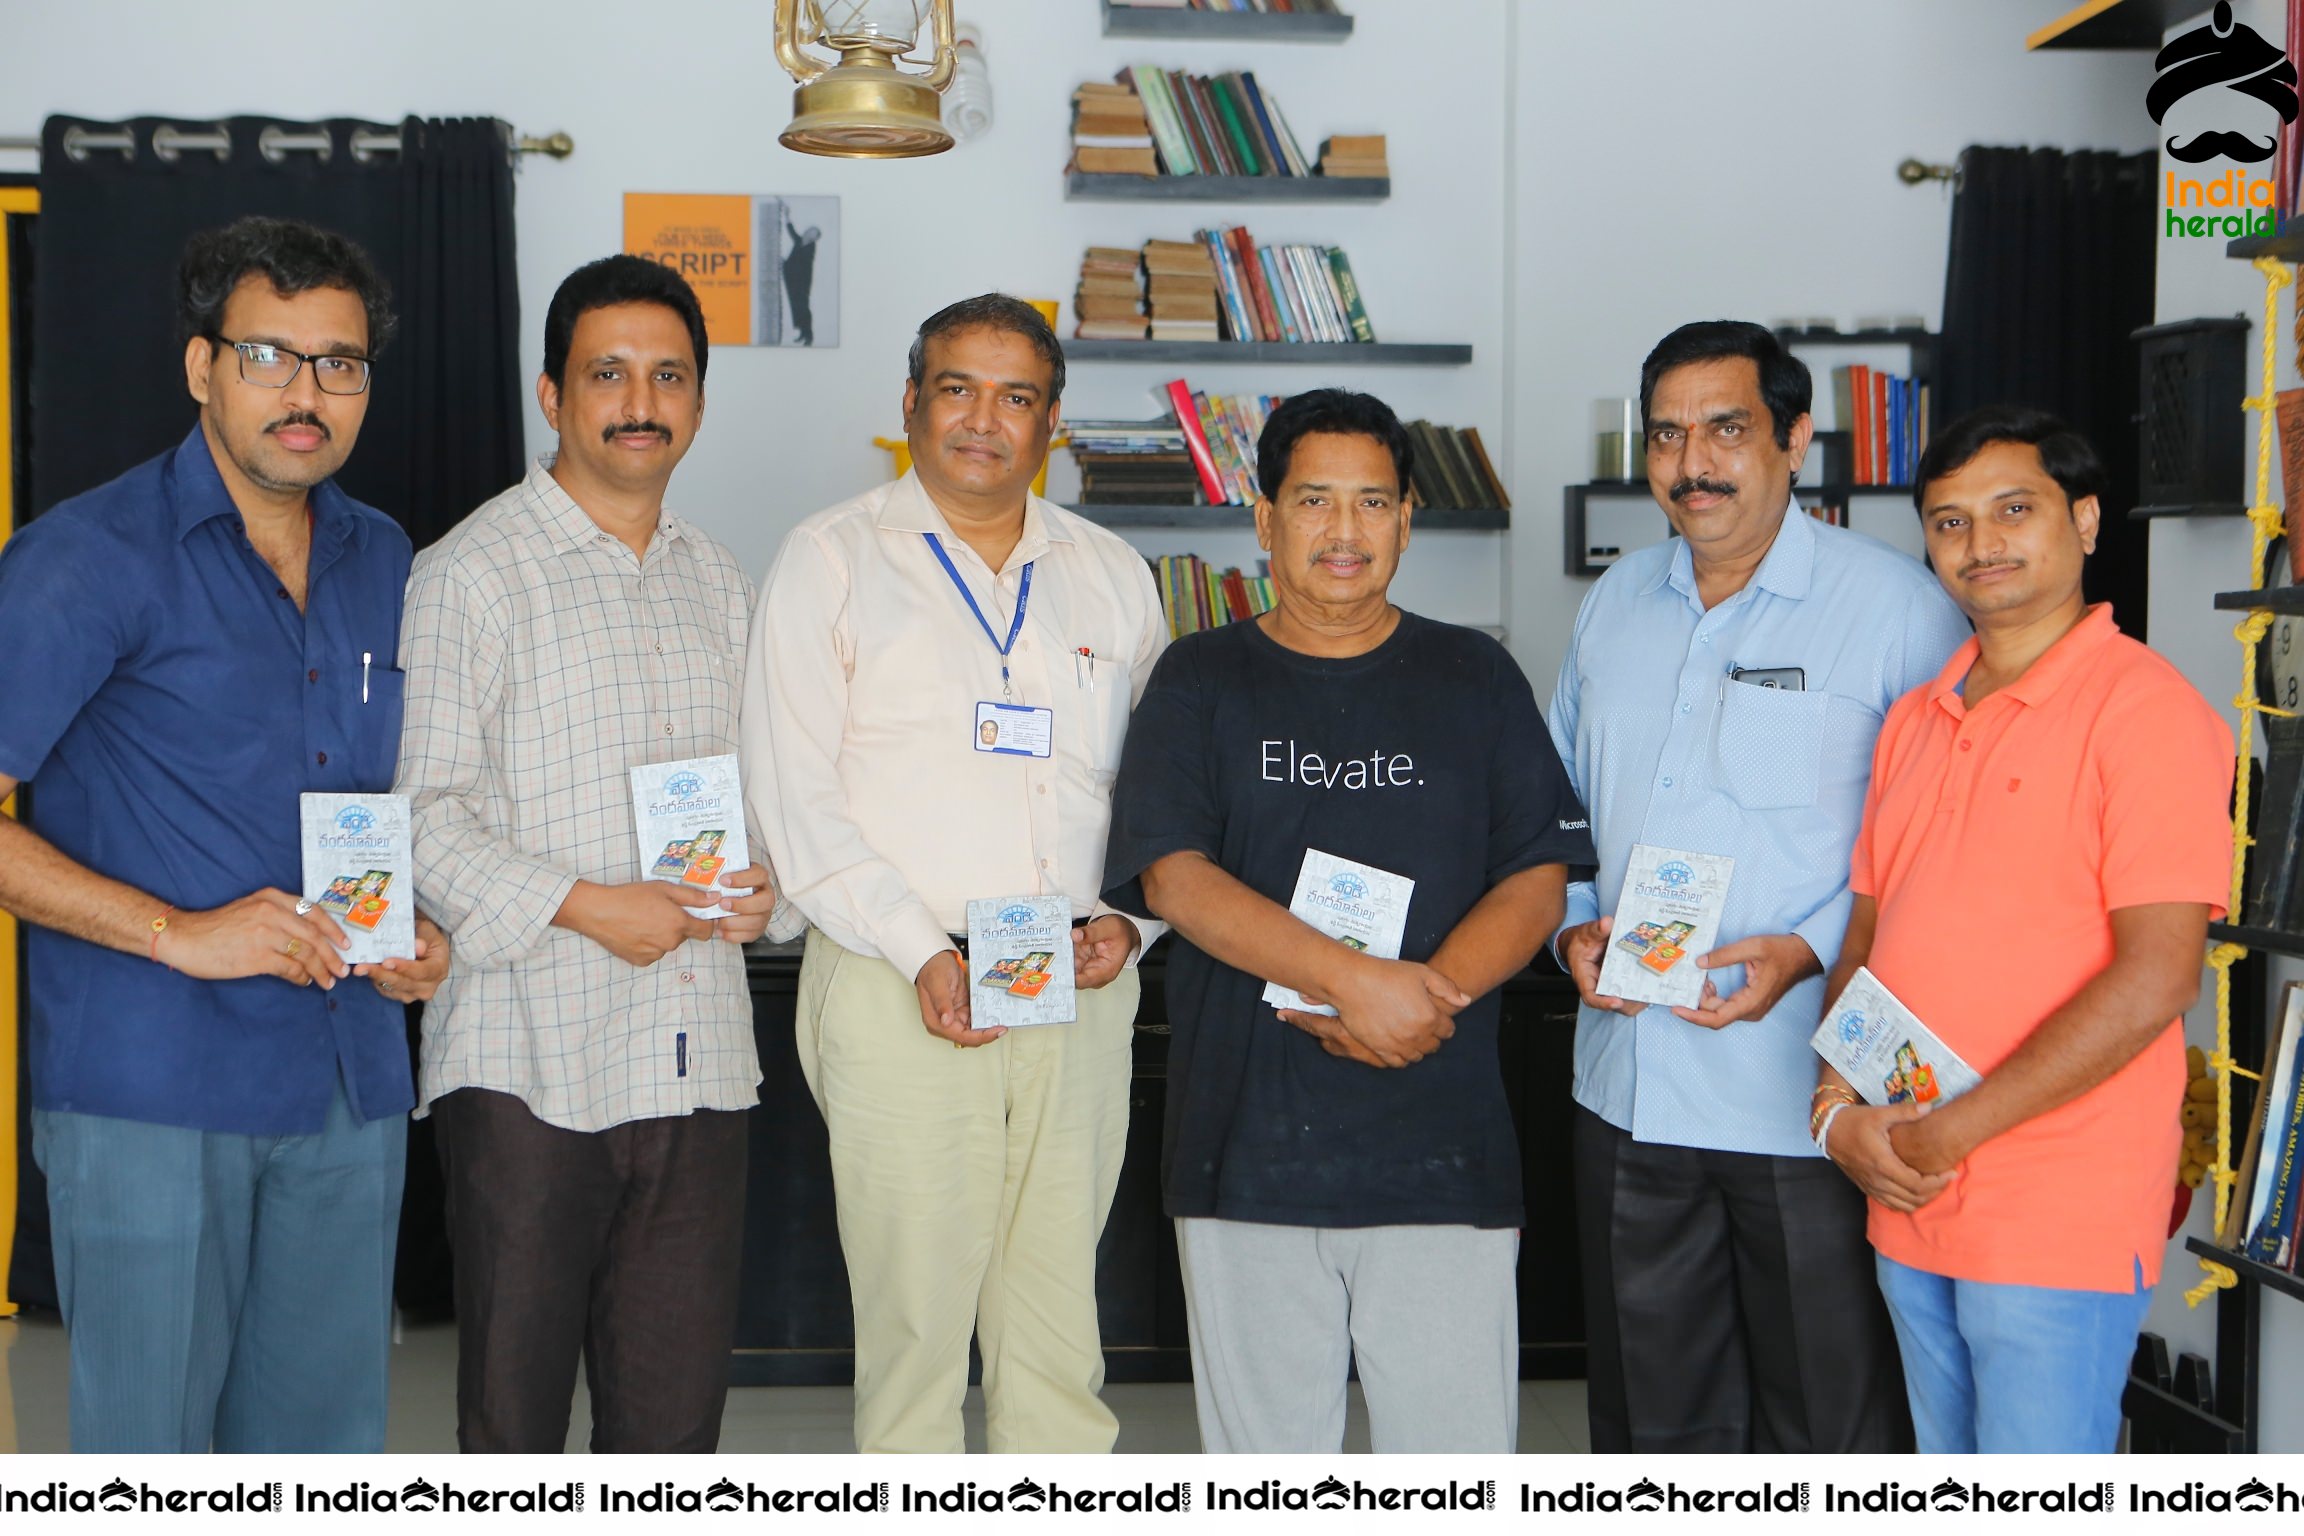 Vendi Chandamamalu Book Launch Stills Set 2